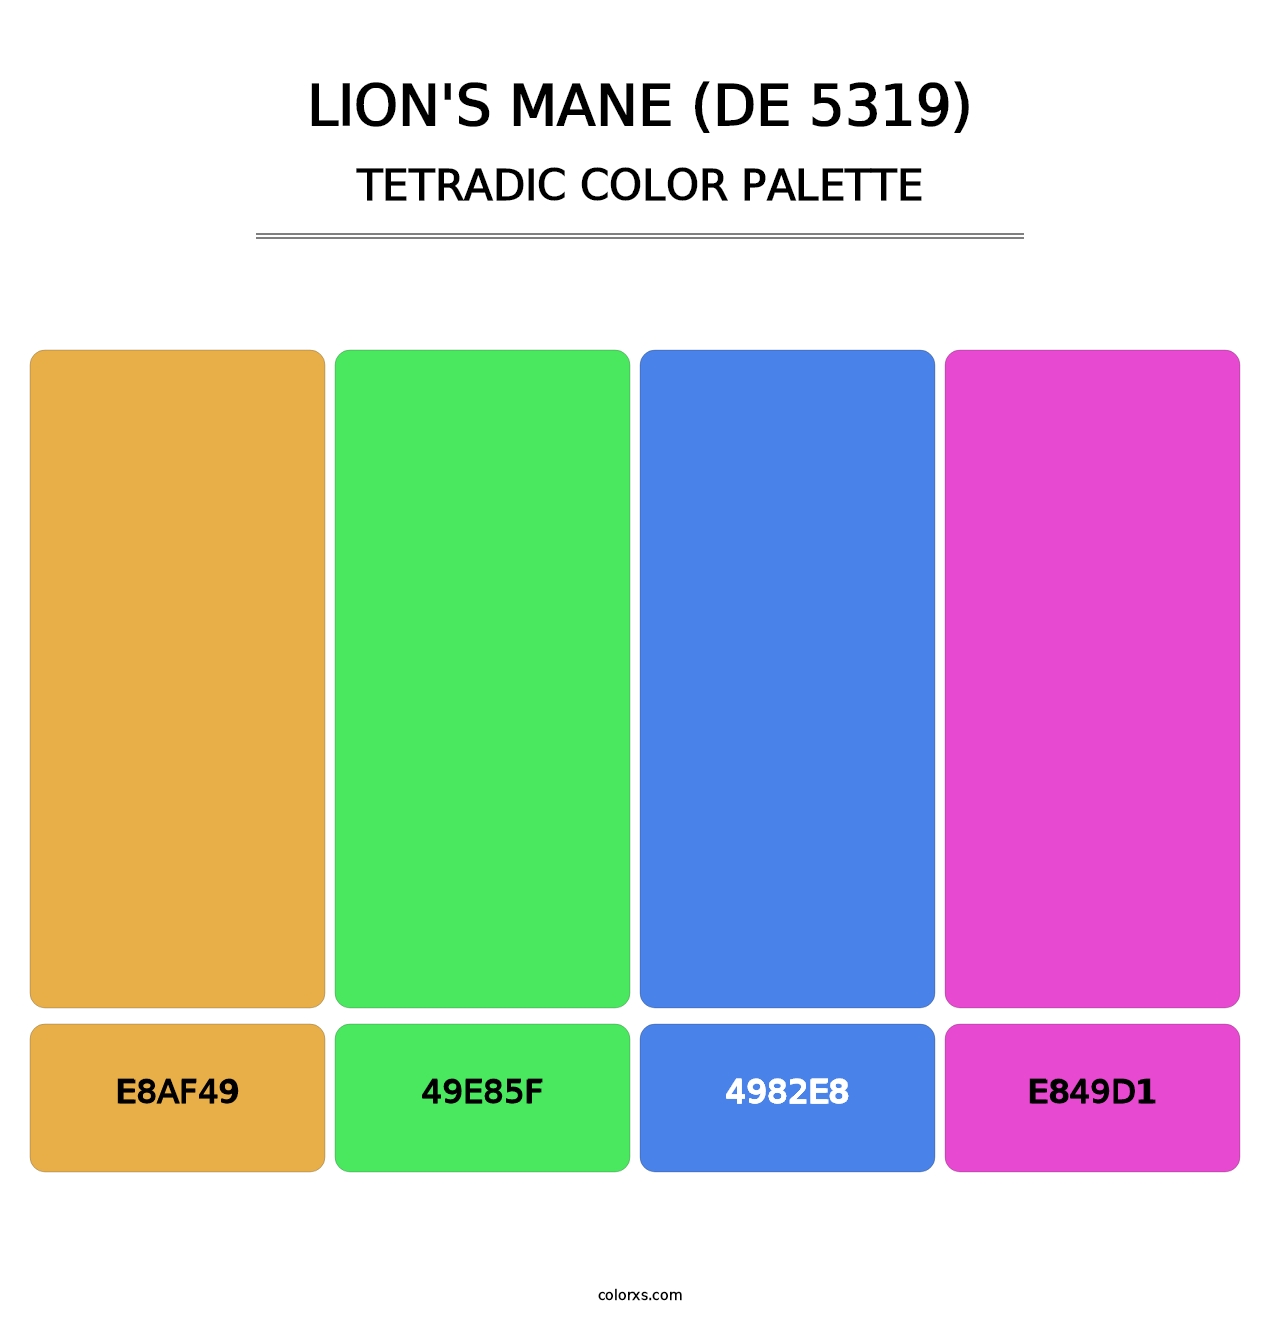 Lion's Mane (DE 5319) - Tetradic Color Palette